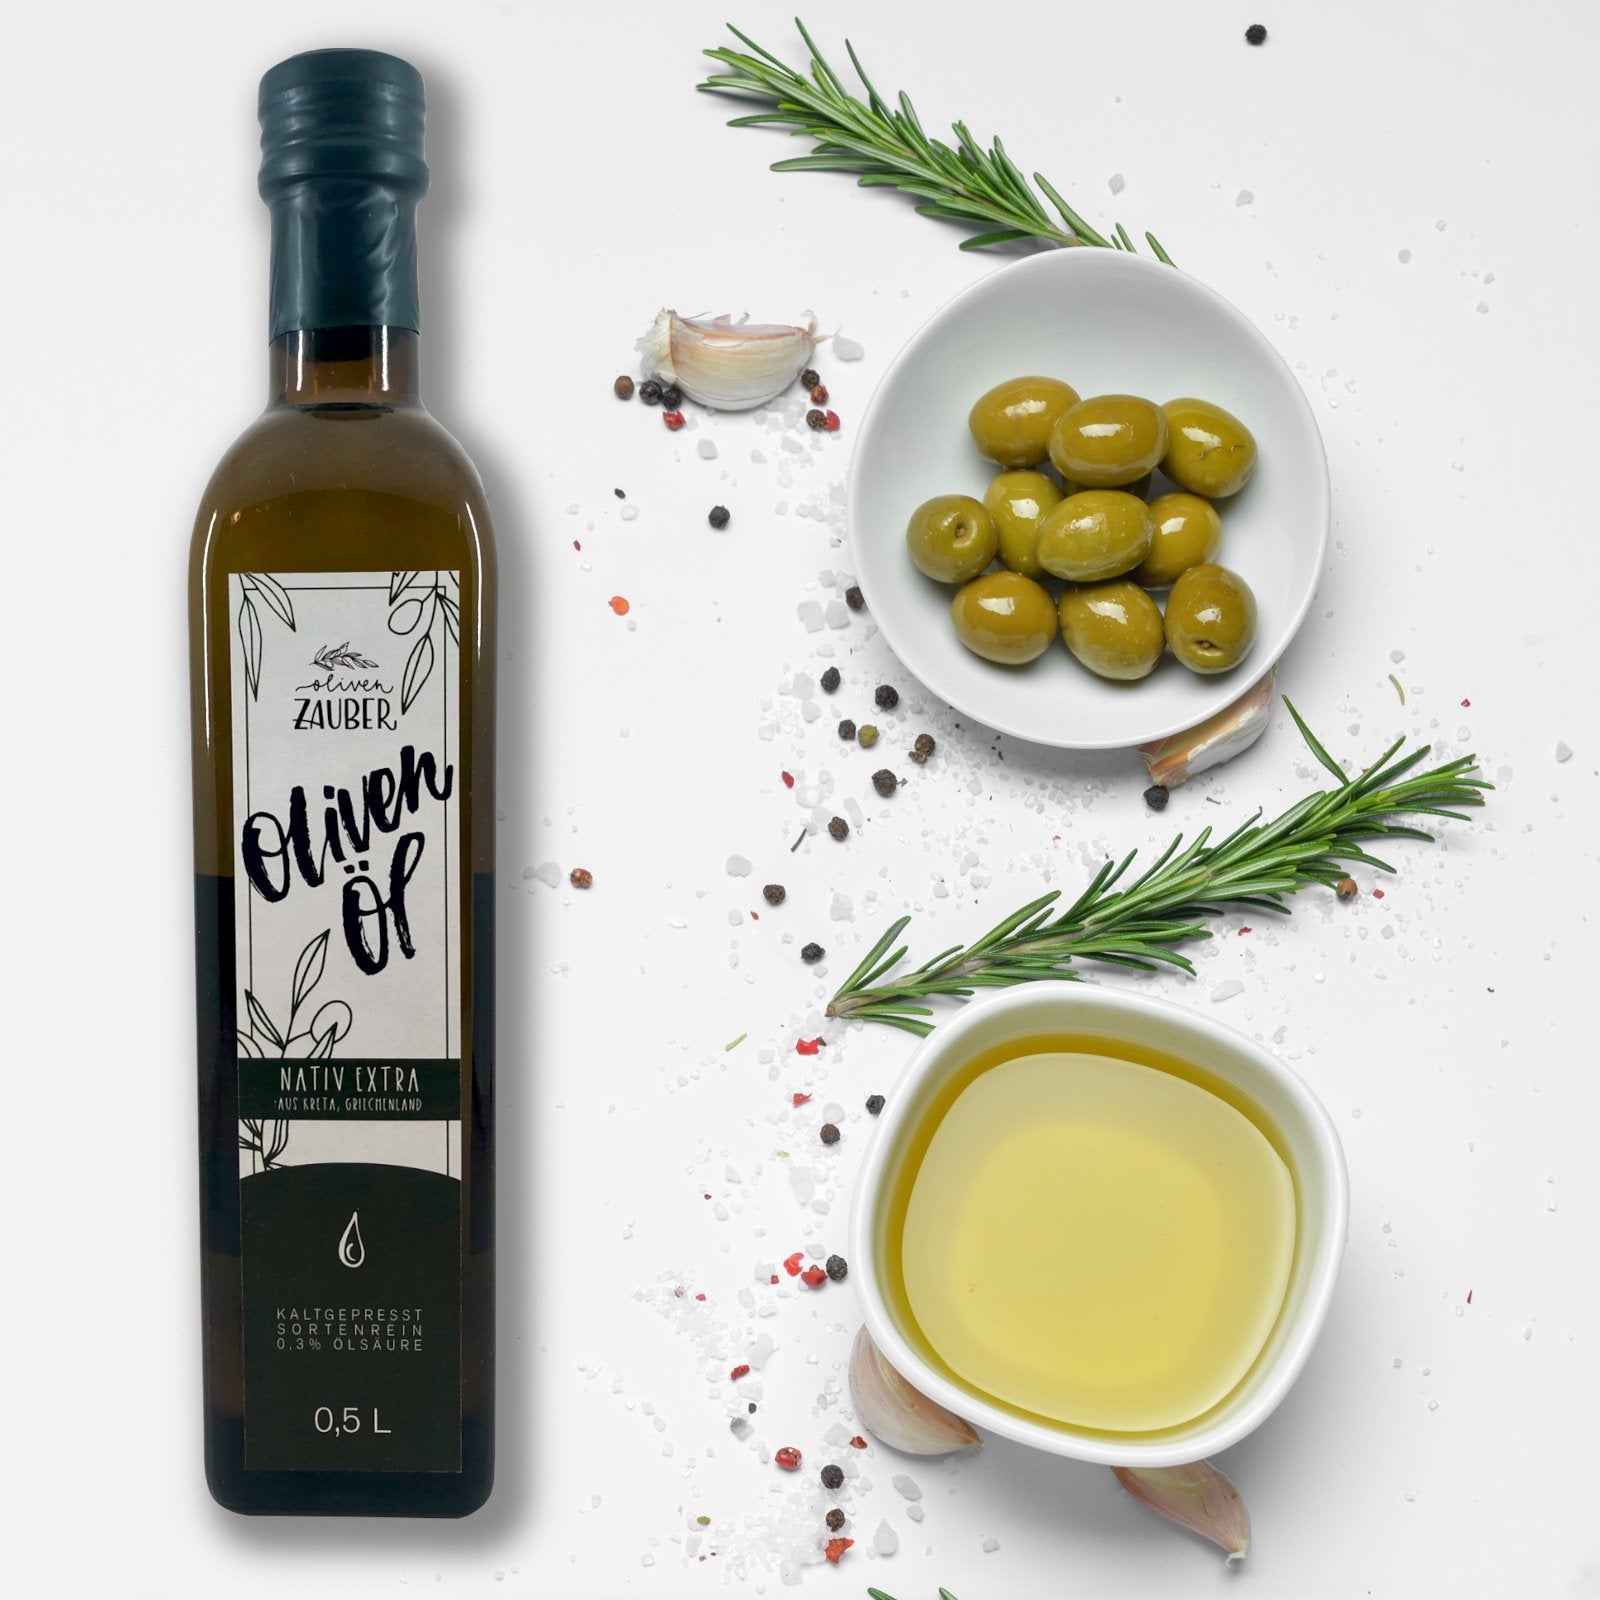 Griechisches Olivenöl nativ extra aus Kreta – 500ml Flasche - OlivenZauber - Olivenöl neu erleben